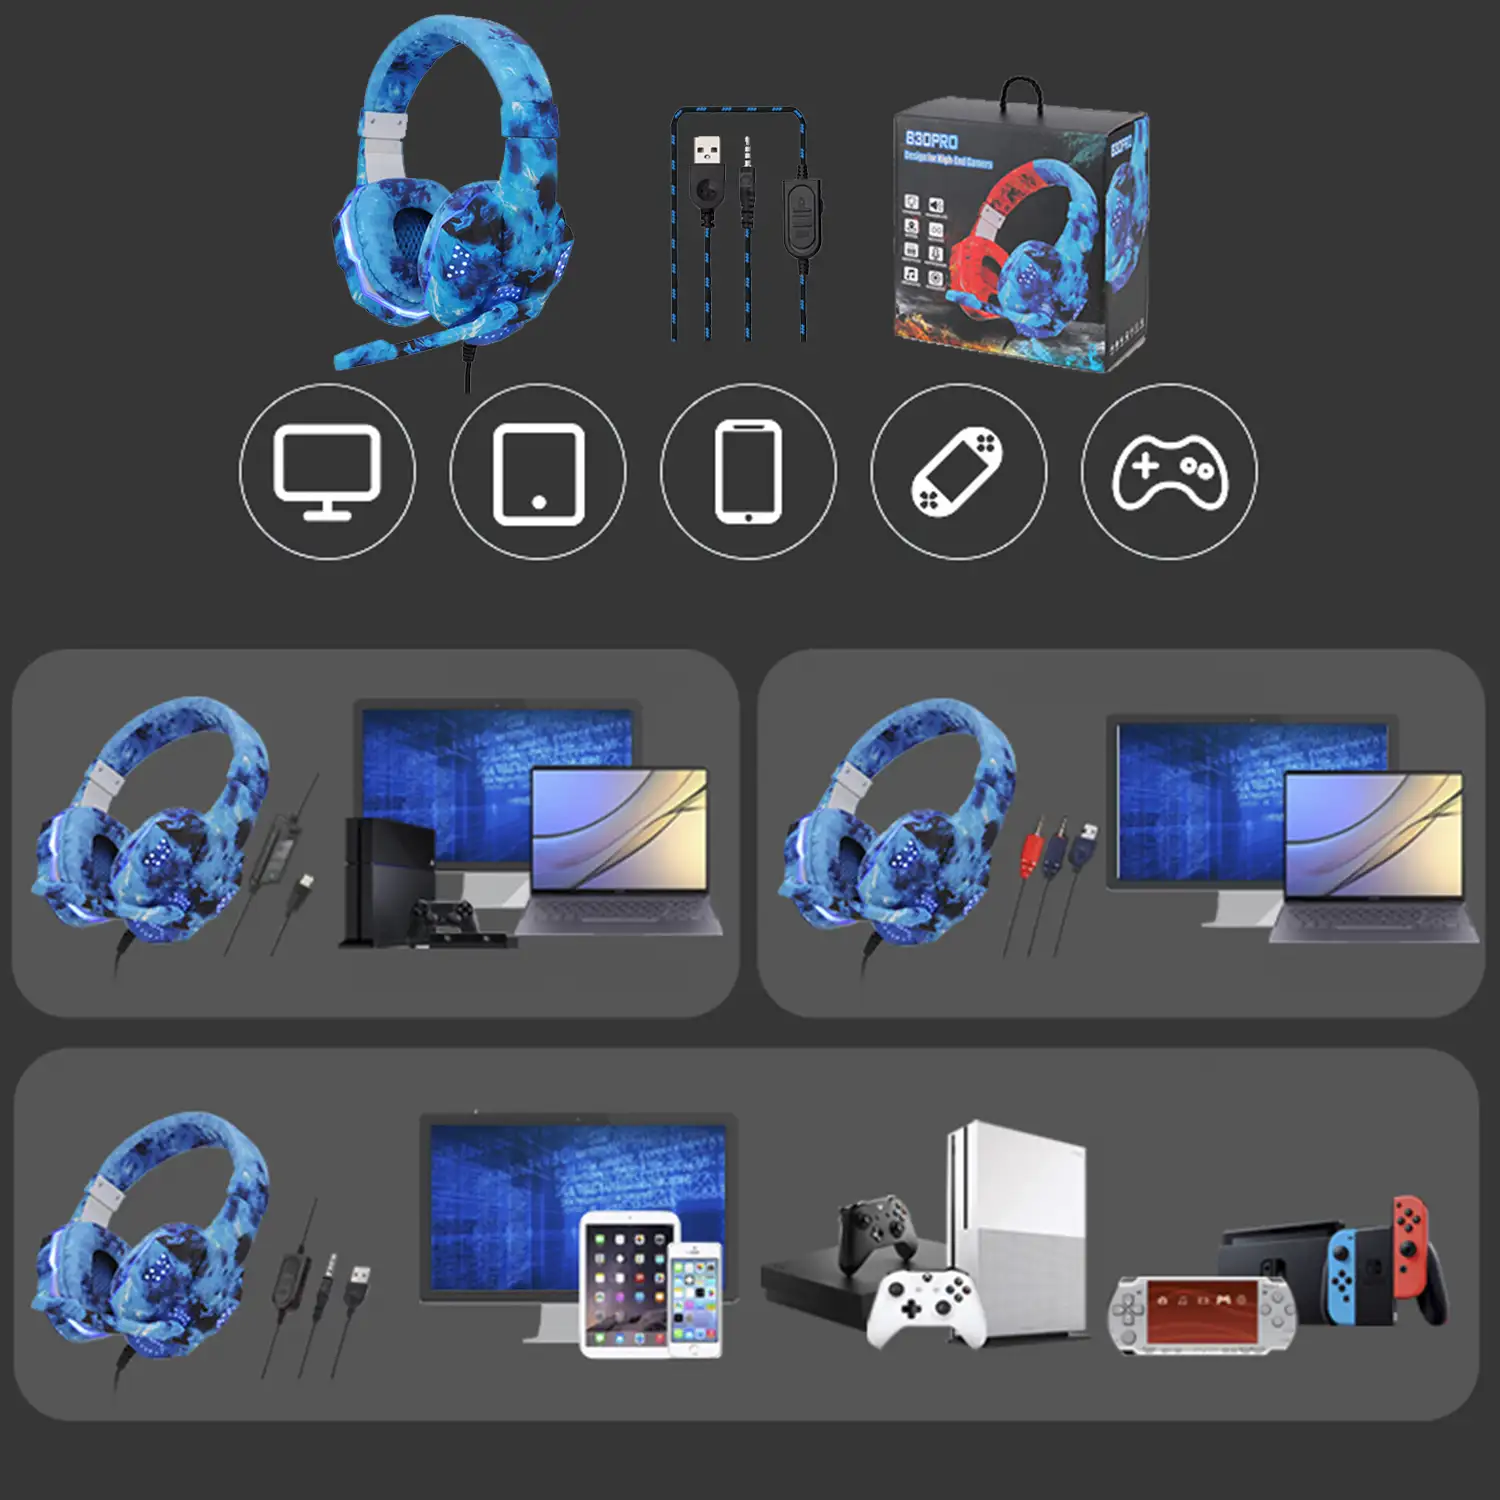 Headset SY830MV con luces led. Auriculares gaming con micro, conexión minijack para PC, portátil, PS4, Xbox One, móvil, tablet. Control de Volumen